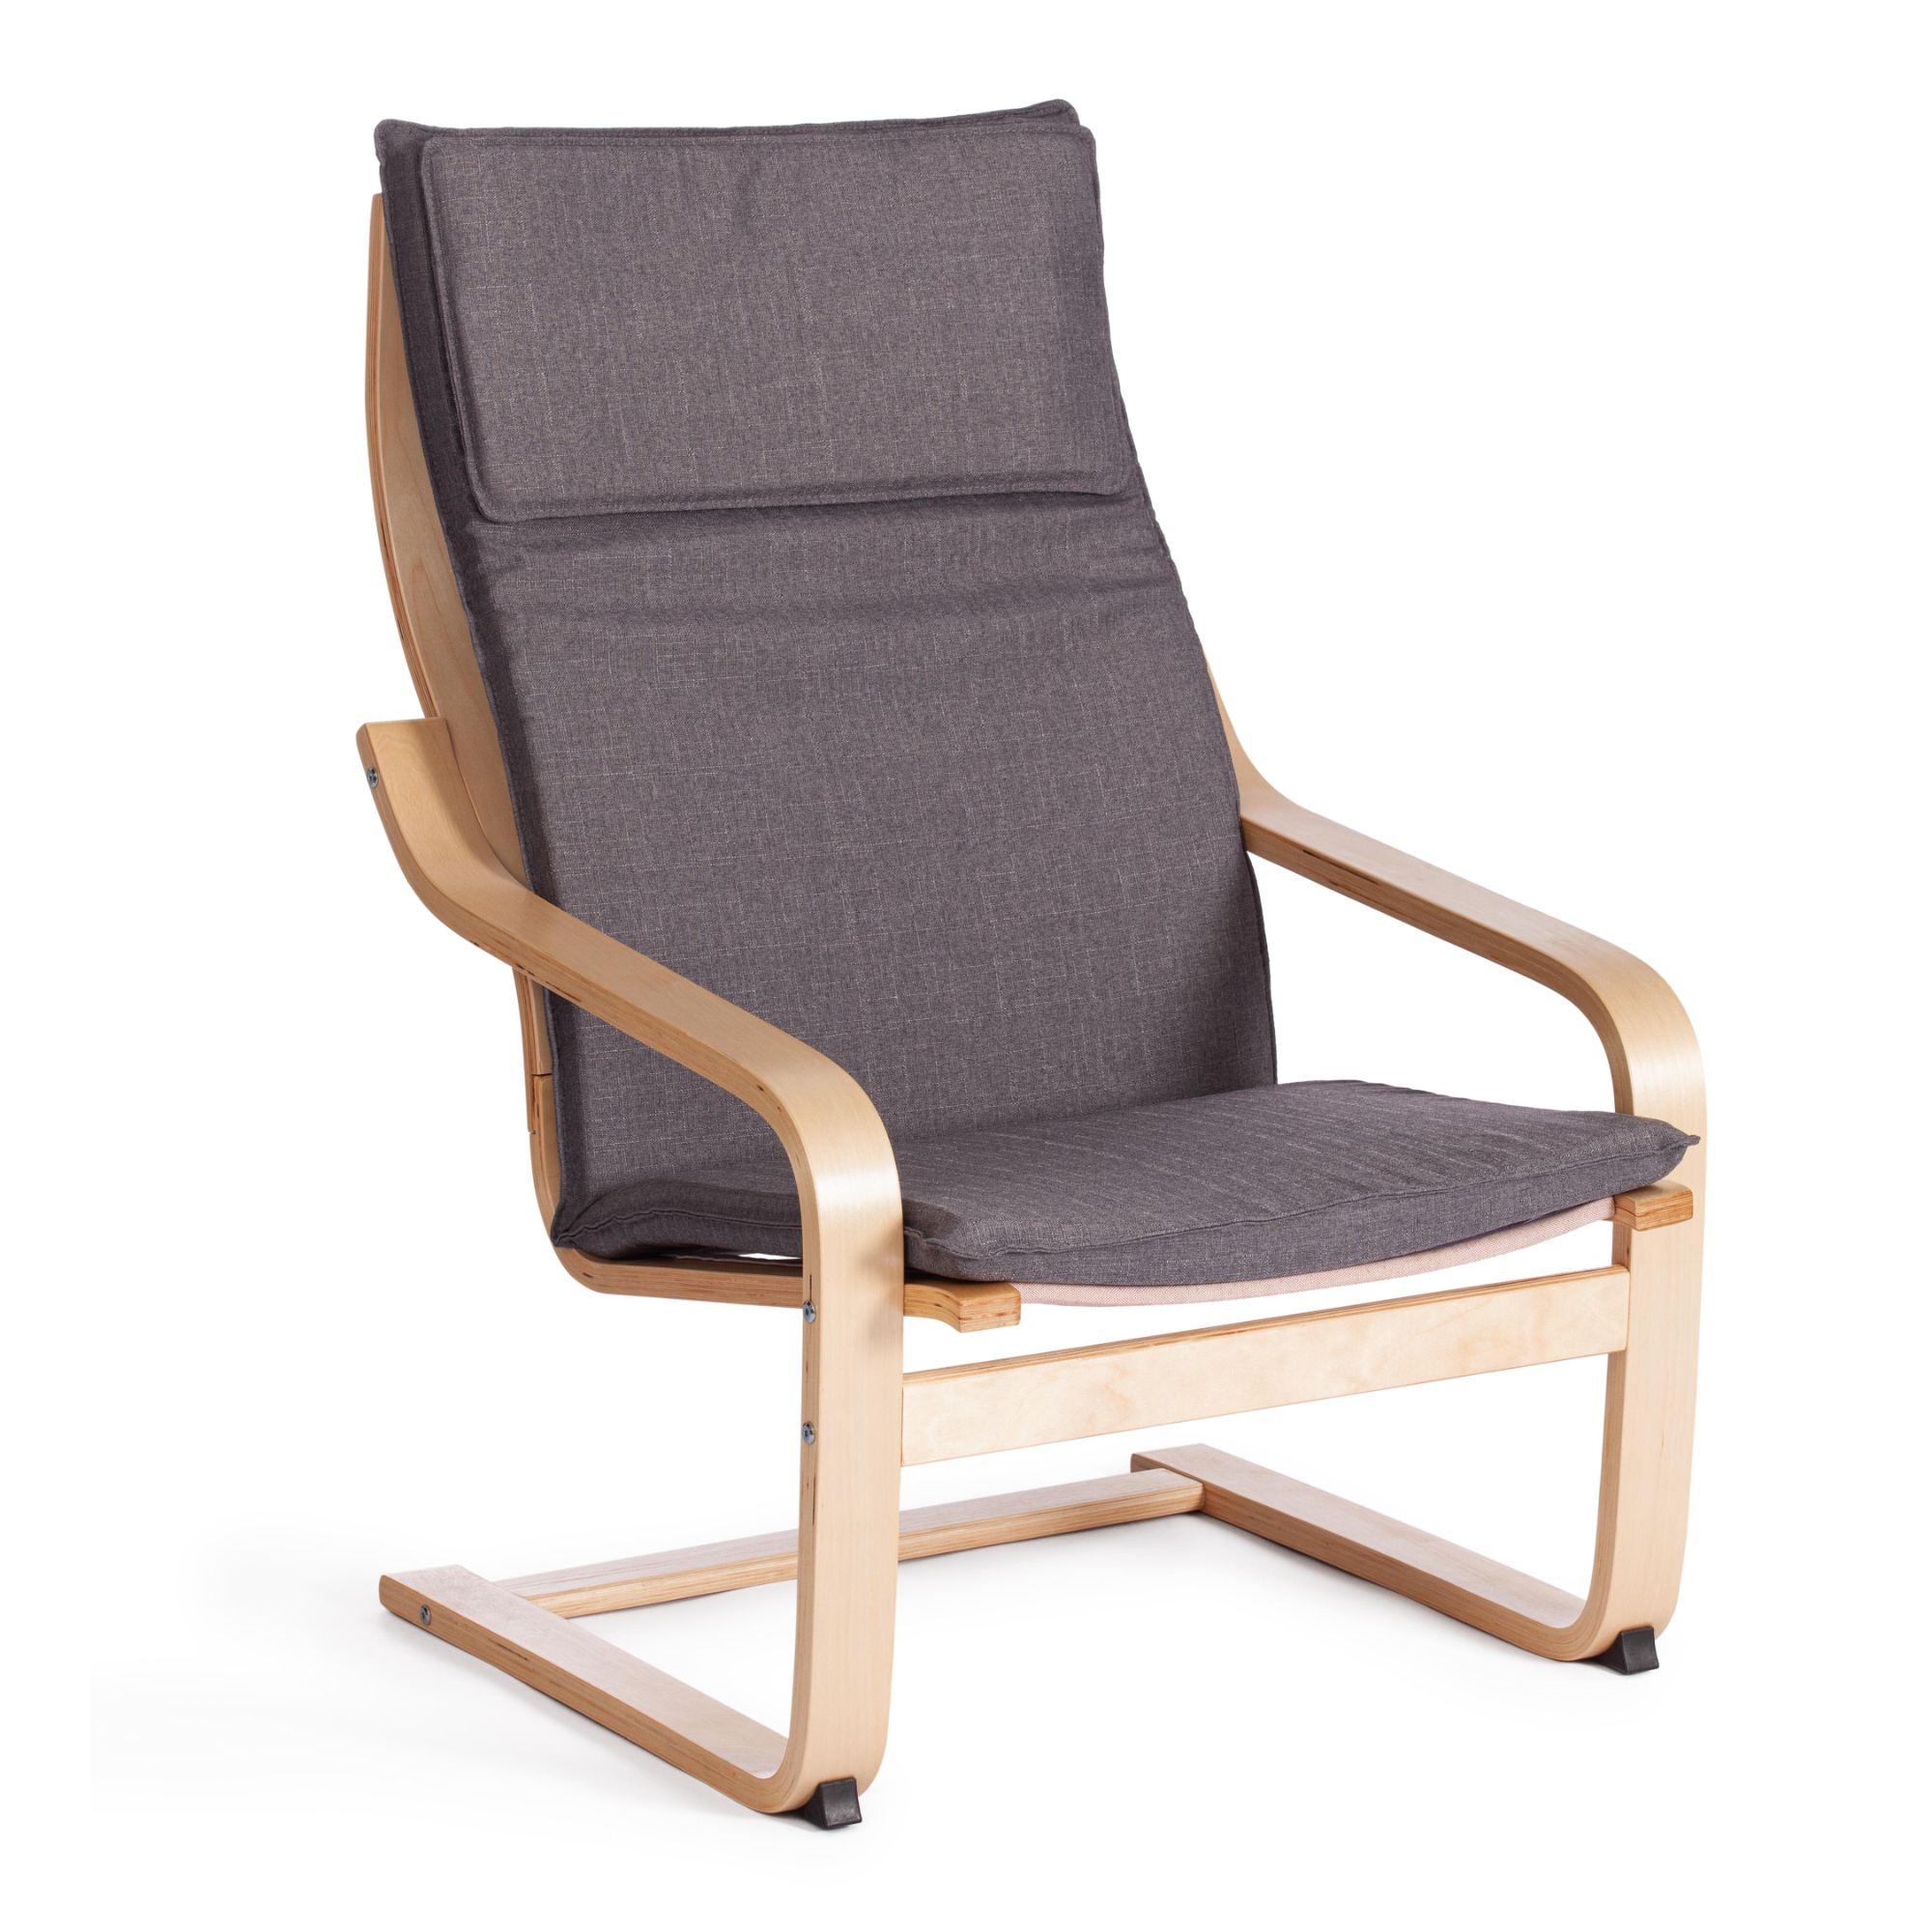 Кресло ТС Biensdorf деревянное с натуральным хлопком серое 67х86х95 см кашпо деревянное 18×6×20 см конверт